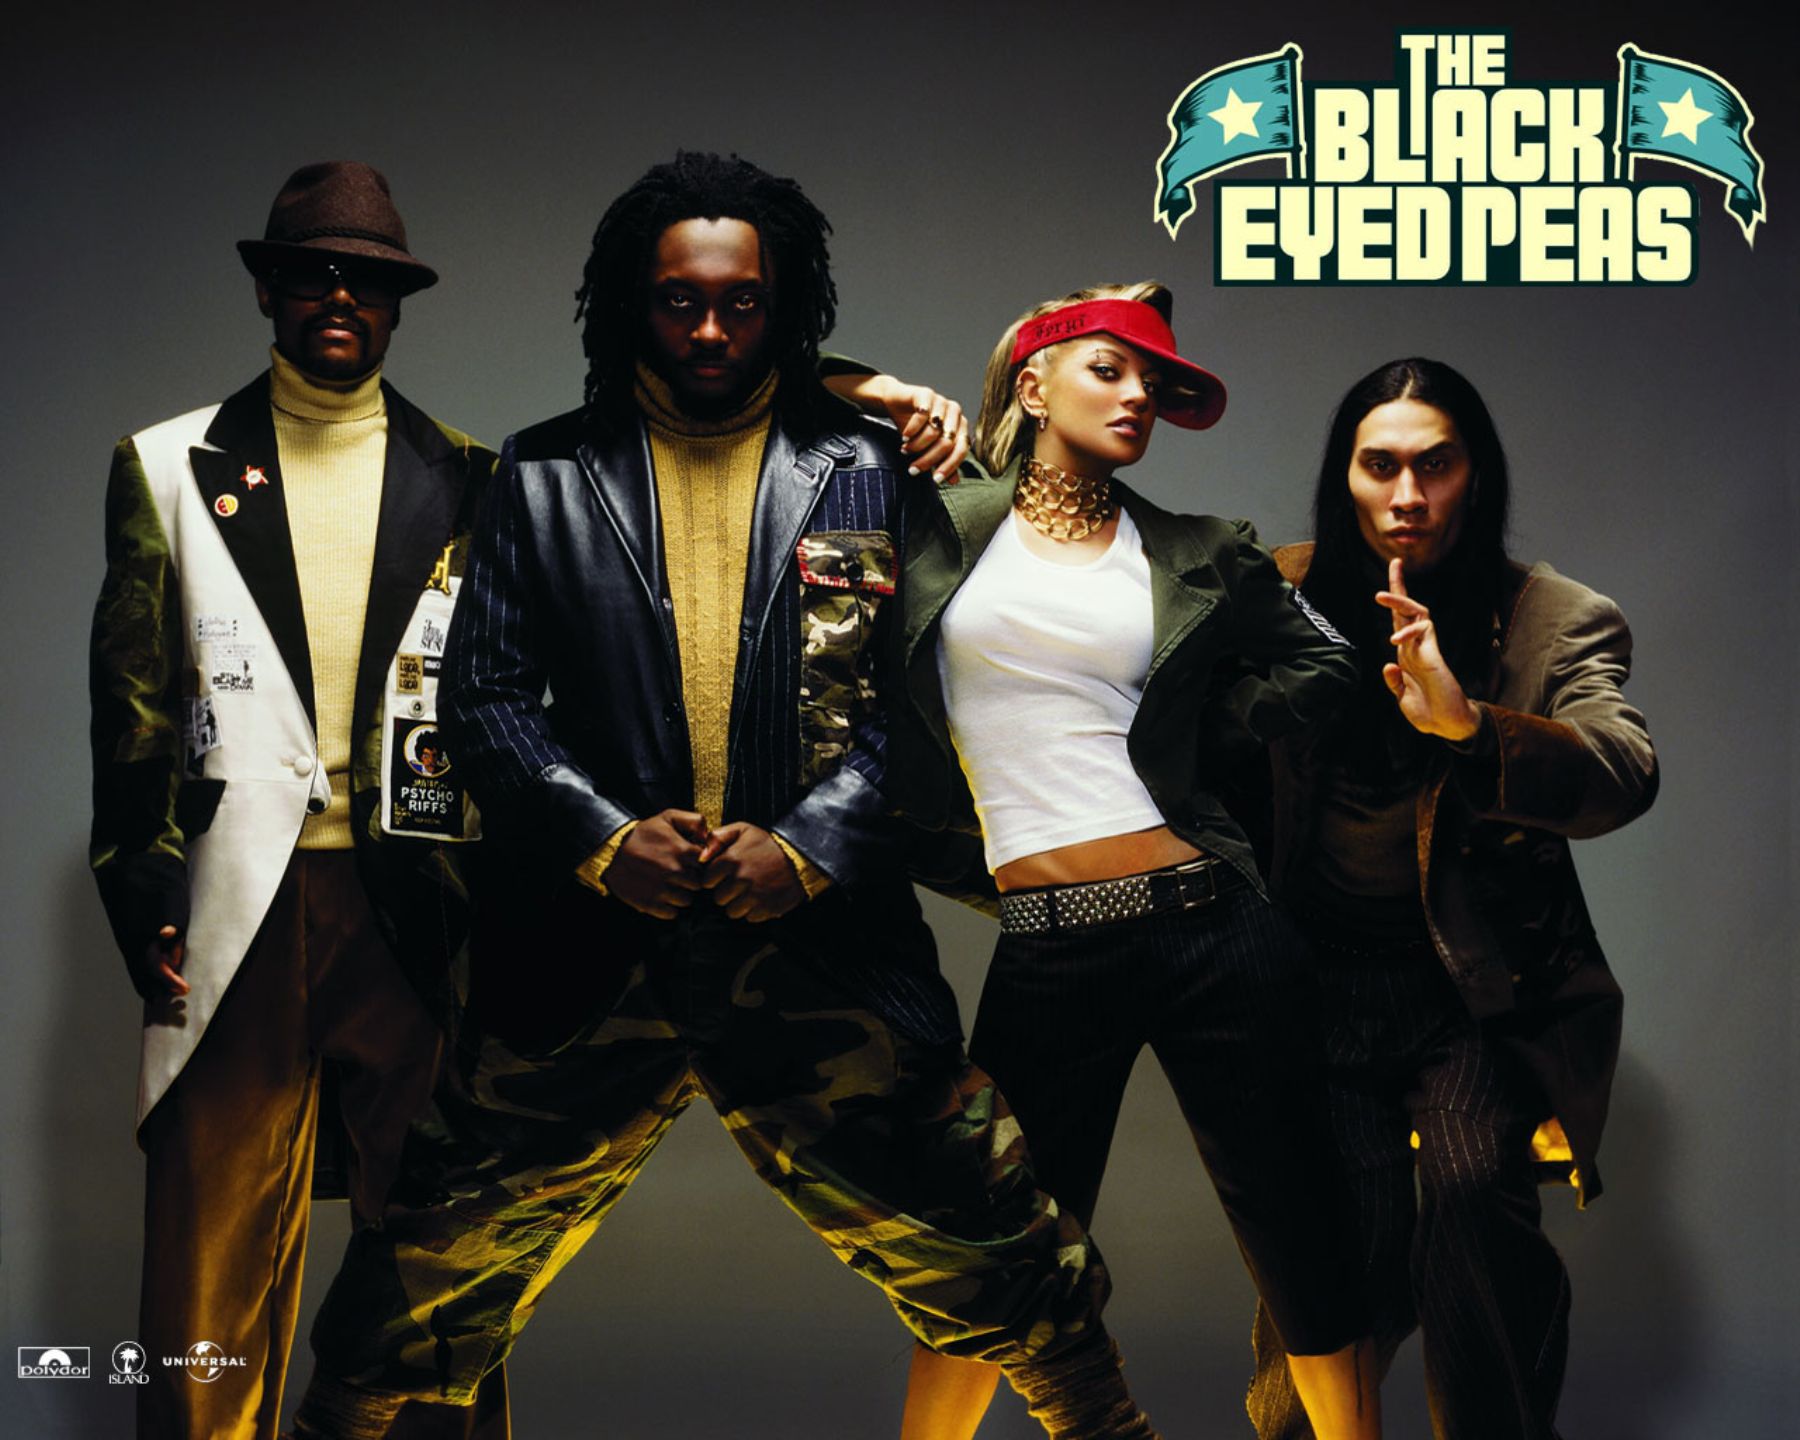 The Black Eyed Peas.